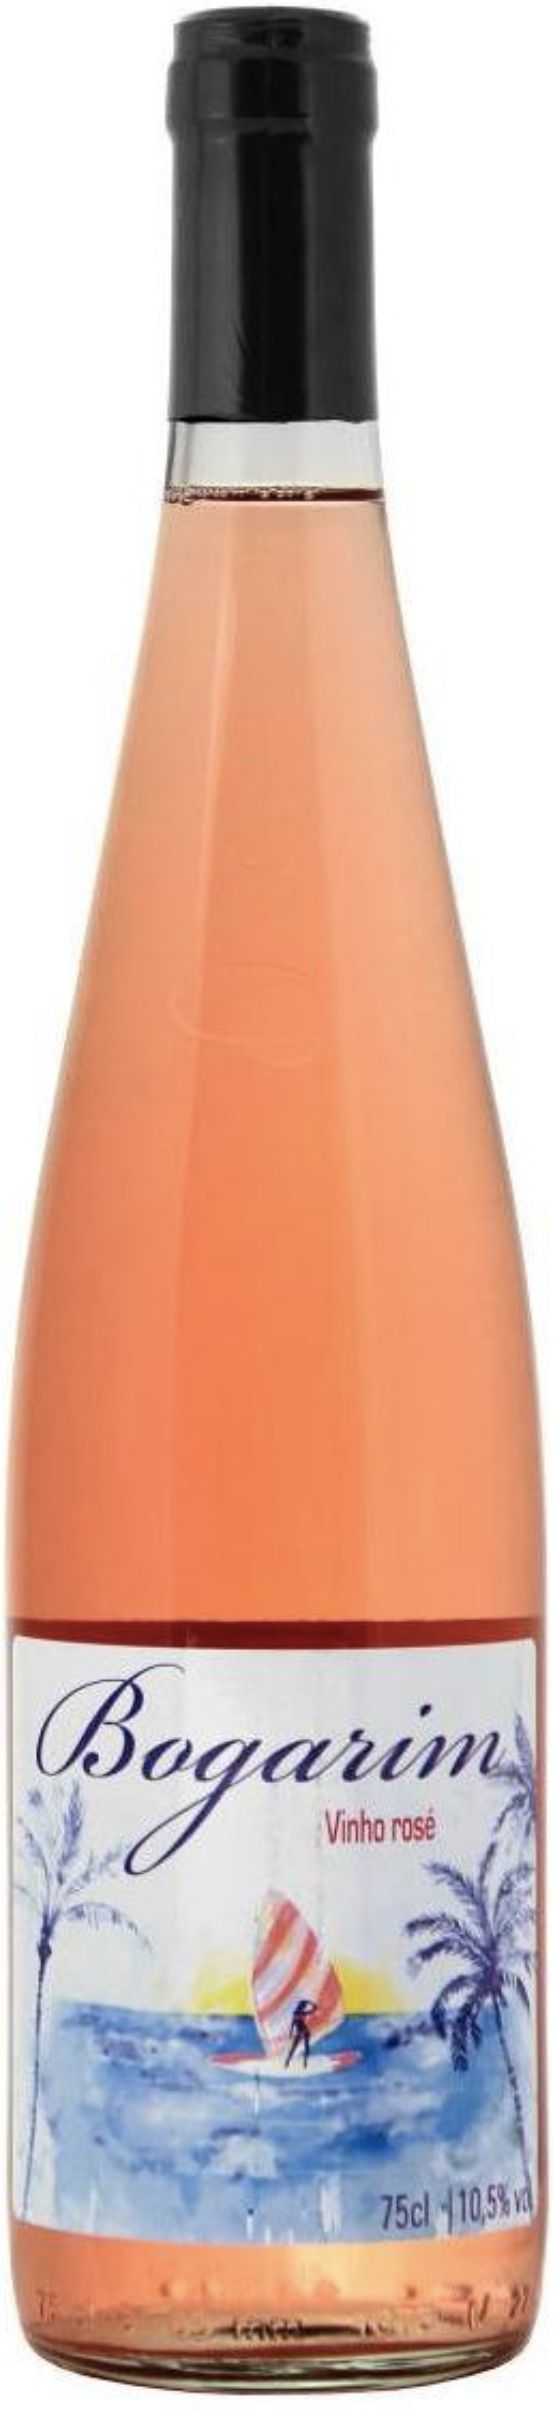 Вина португалии розовое полусухое. Вино Богарим Португалия. Вино bogarim розовое сухое 0.75 л. Богарим роз. П/сух. 0,75. Вино Богарим розовое Португалия.